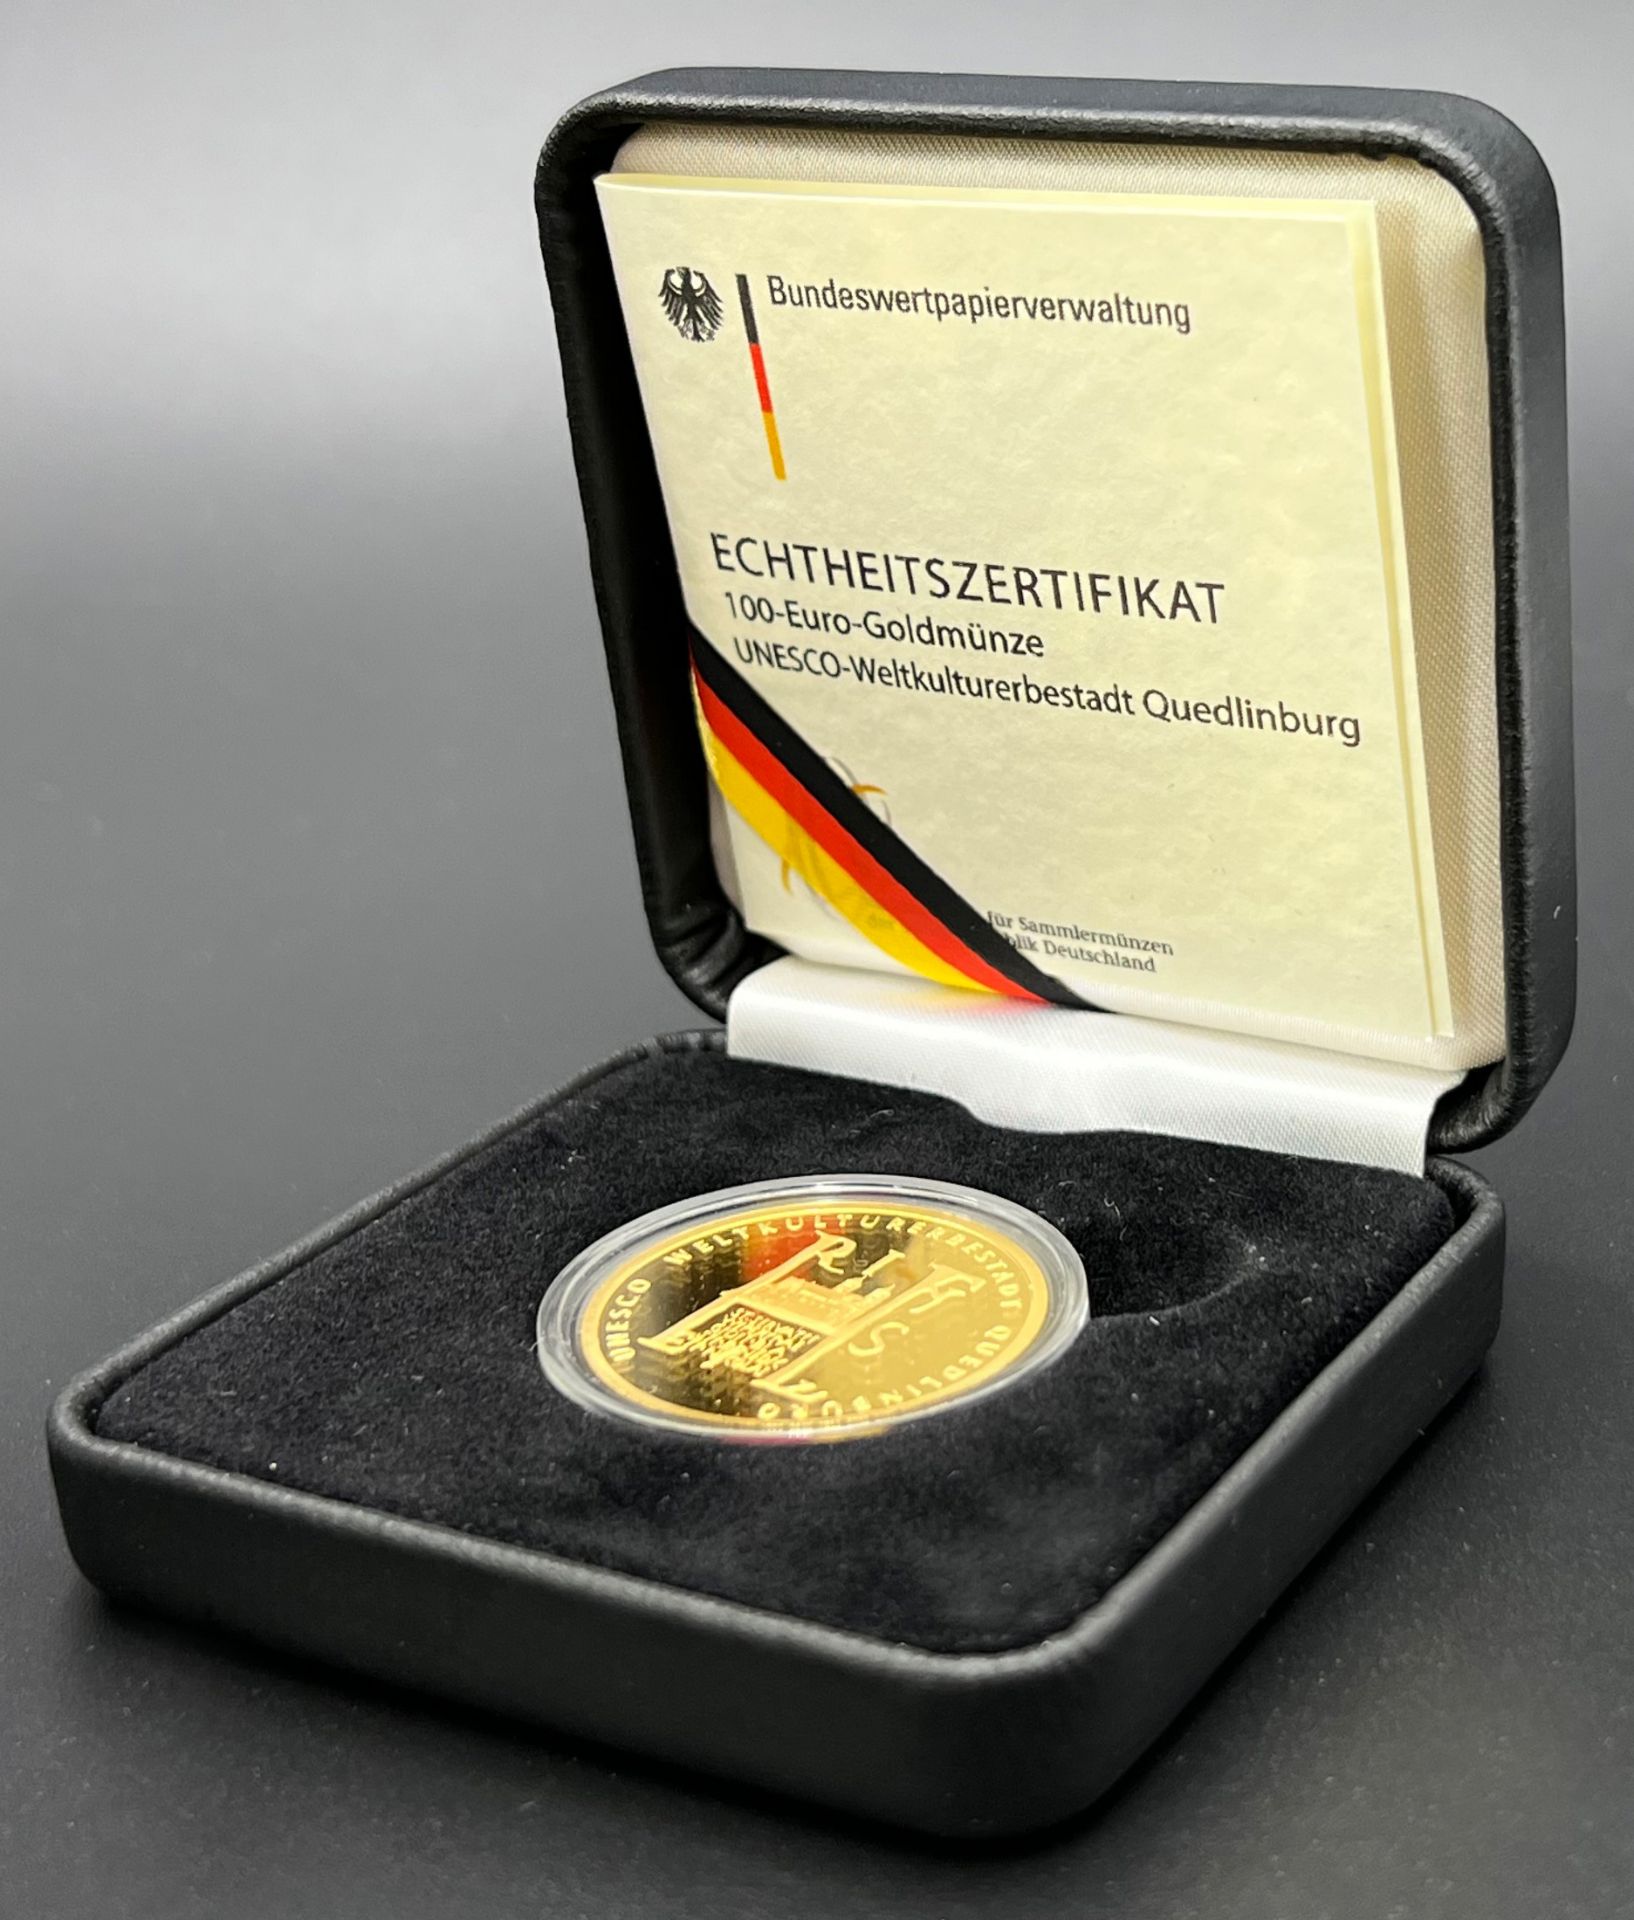 Goldmünze. 100 Euro "UNESCO-Weltkulturerbestadt Quedlinburg". BRD 2003.